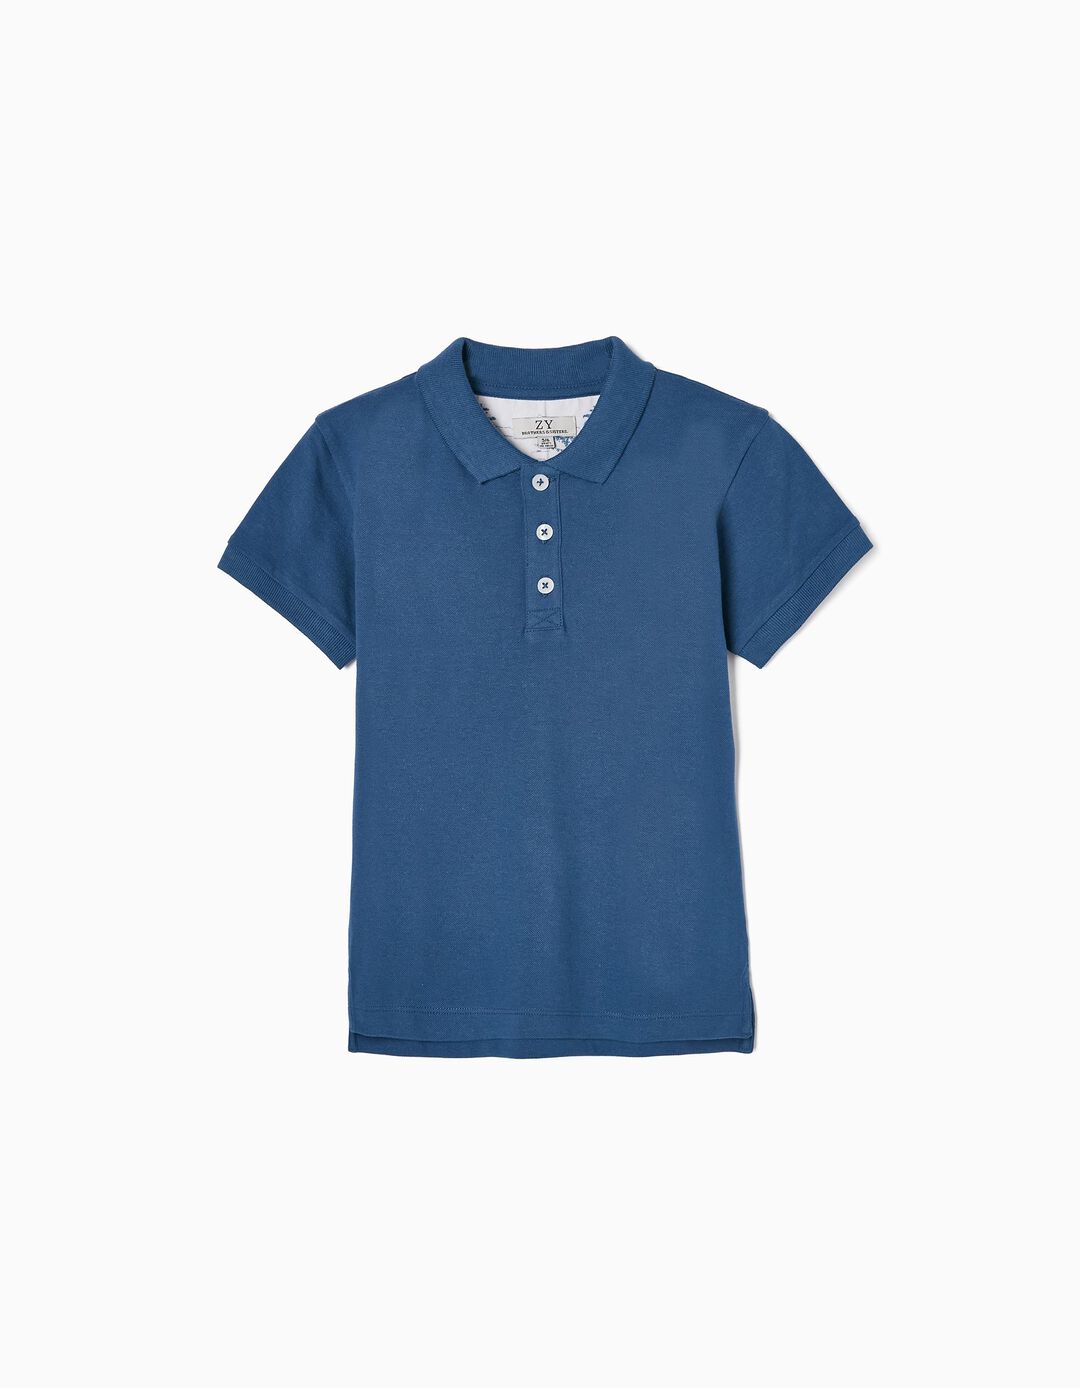 Cotton Piqué Polo Shirt for Boys 'You&Me', Dark Blue